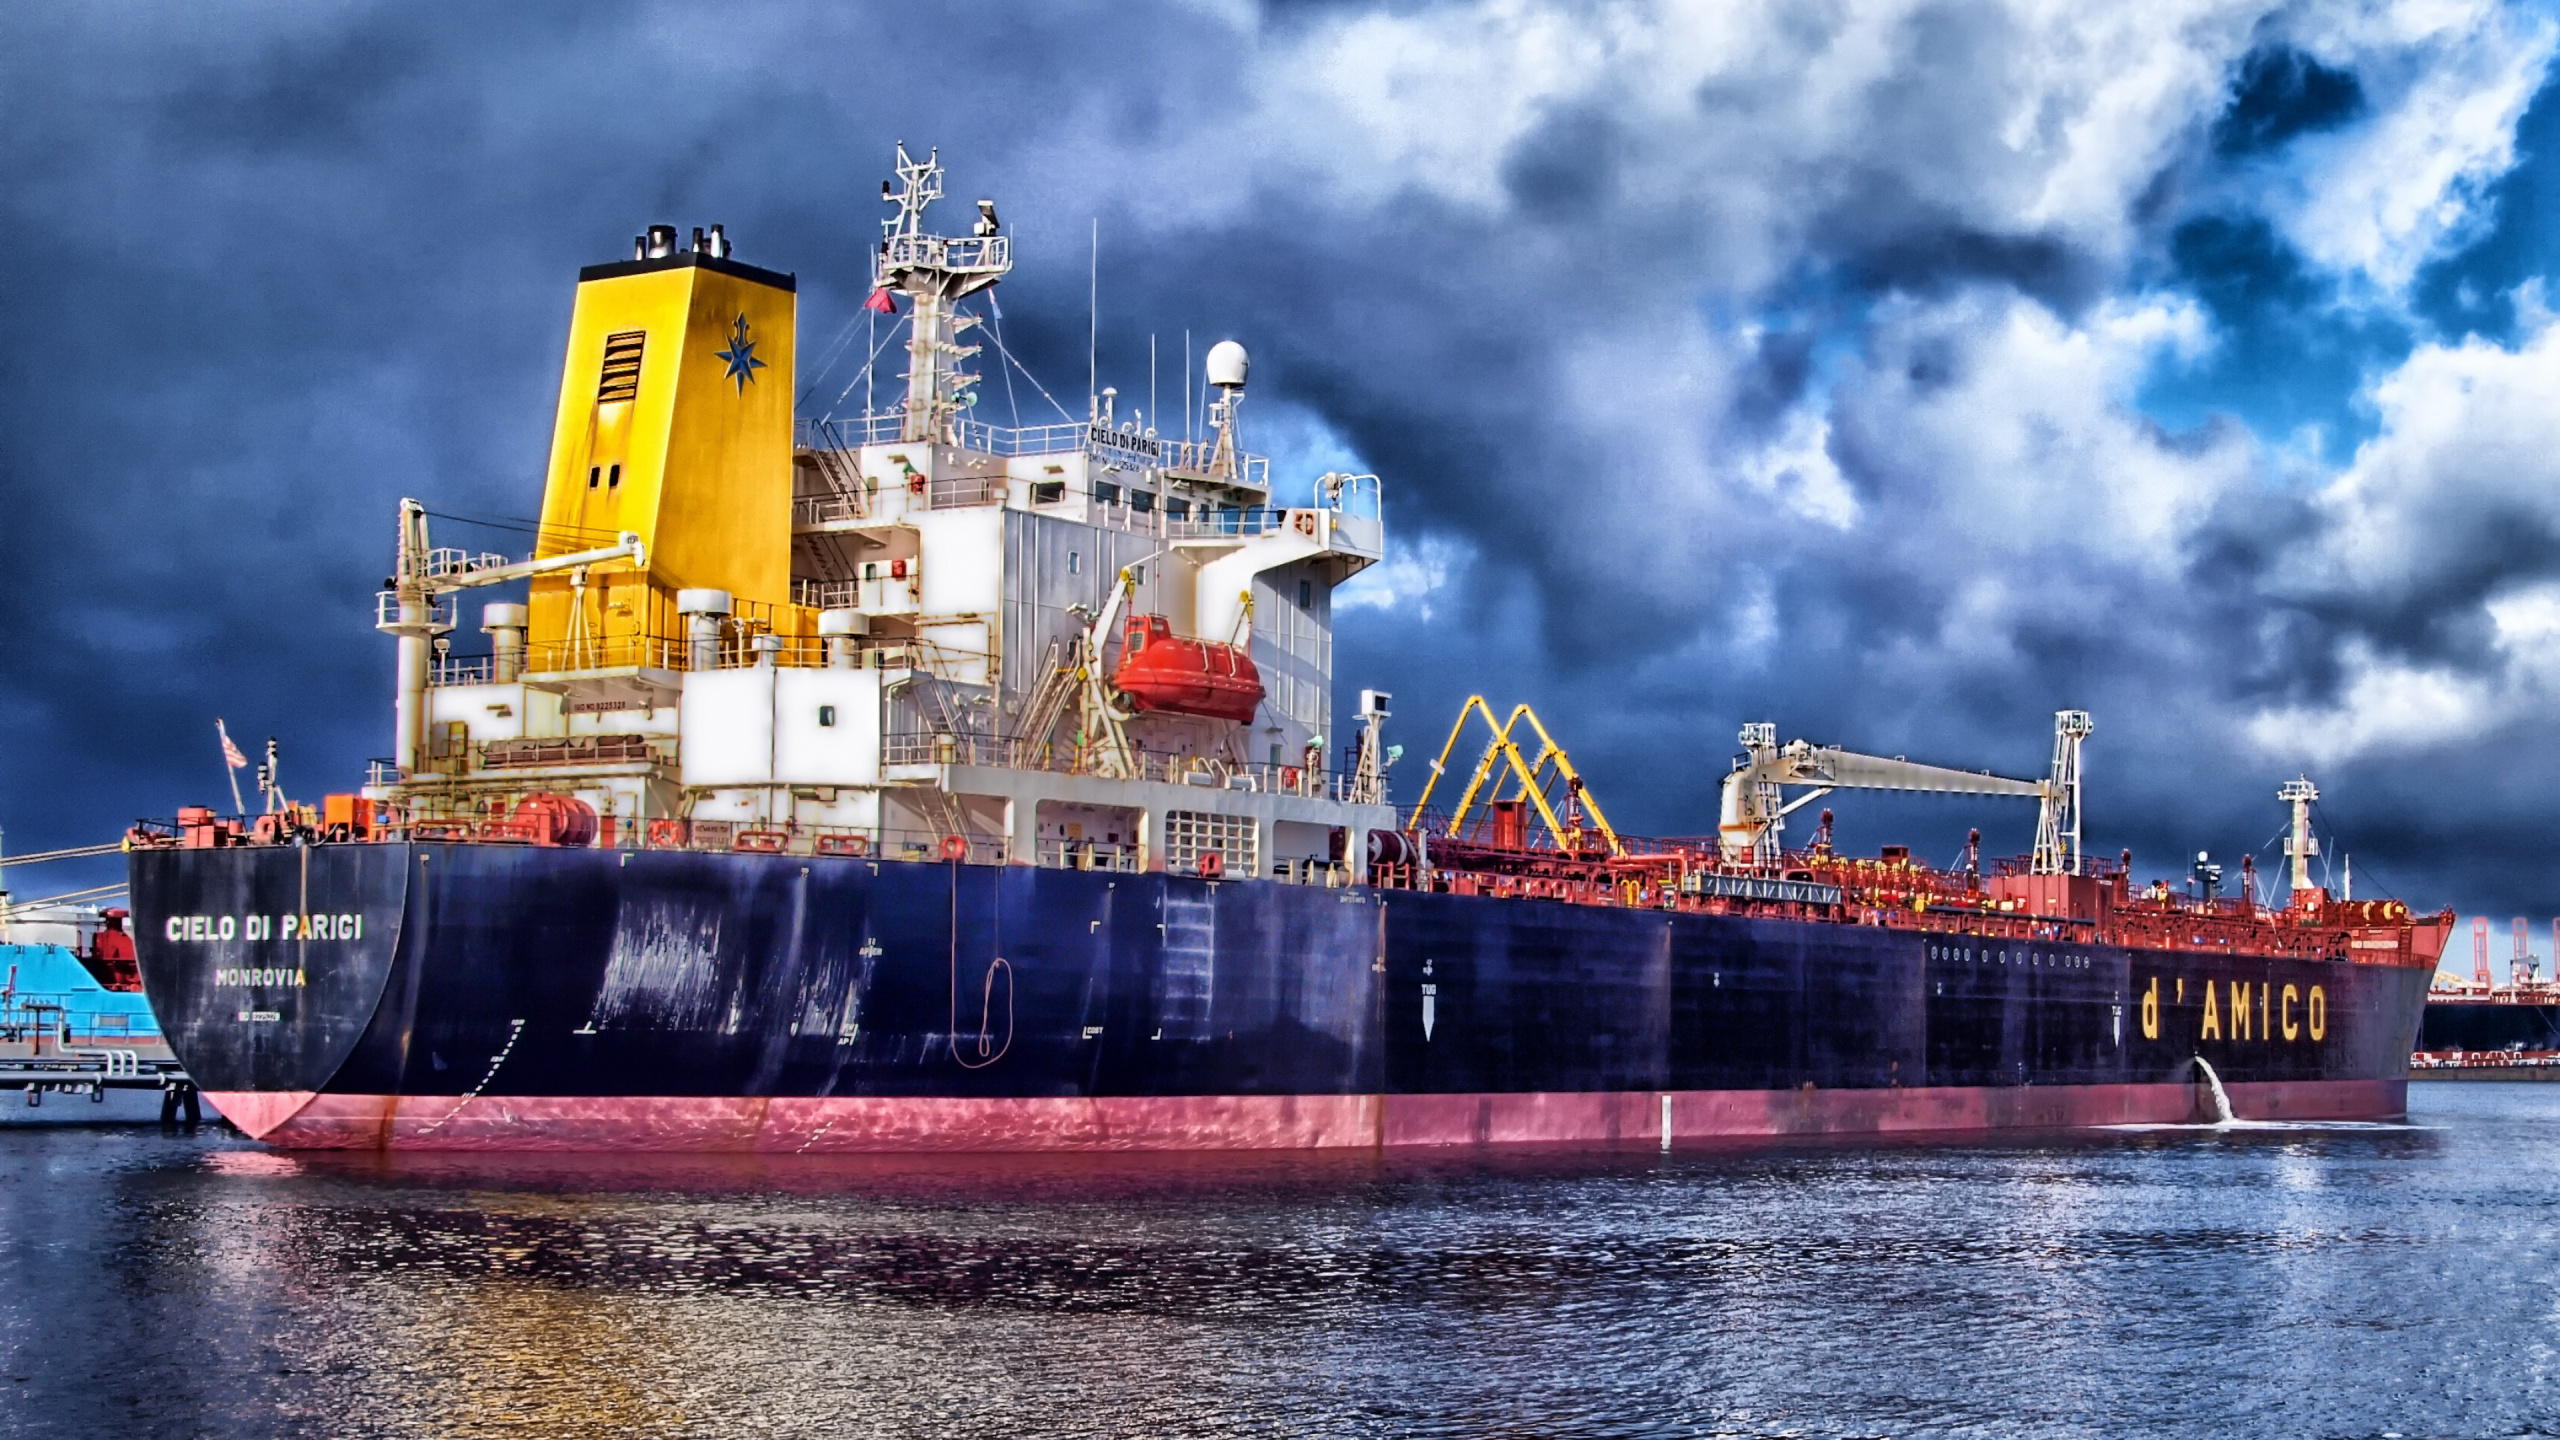 Schiff, Güterverkehr, Frachtschiff, Fracht, Wasserfahrzeug. Wallpaper in 2560x1440 Resolution